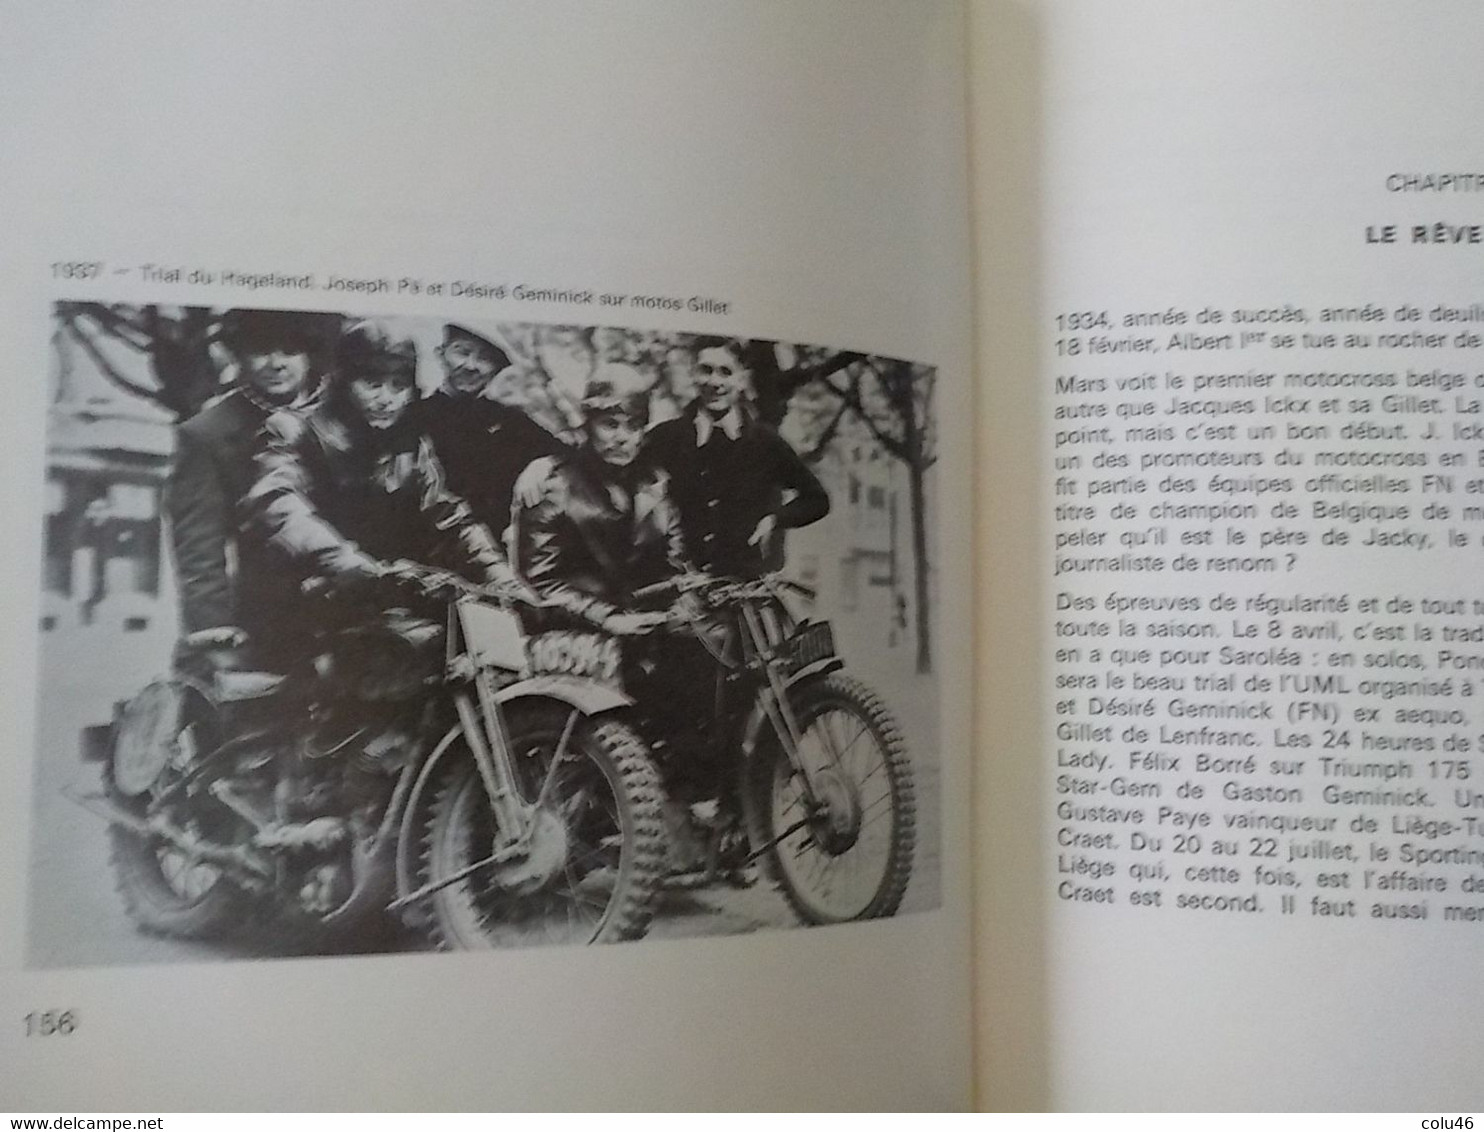 1975 livre dédicace auteur  Les Demoiselles de Herstal Motocyclette de Liège jusque 1940 FN Gilbert Gaspard